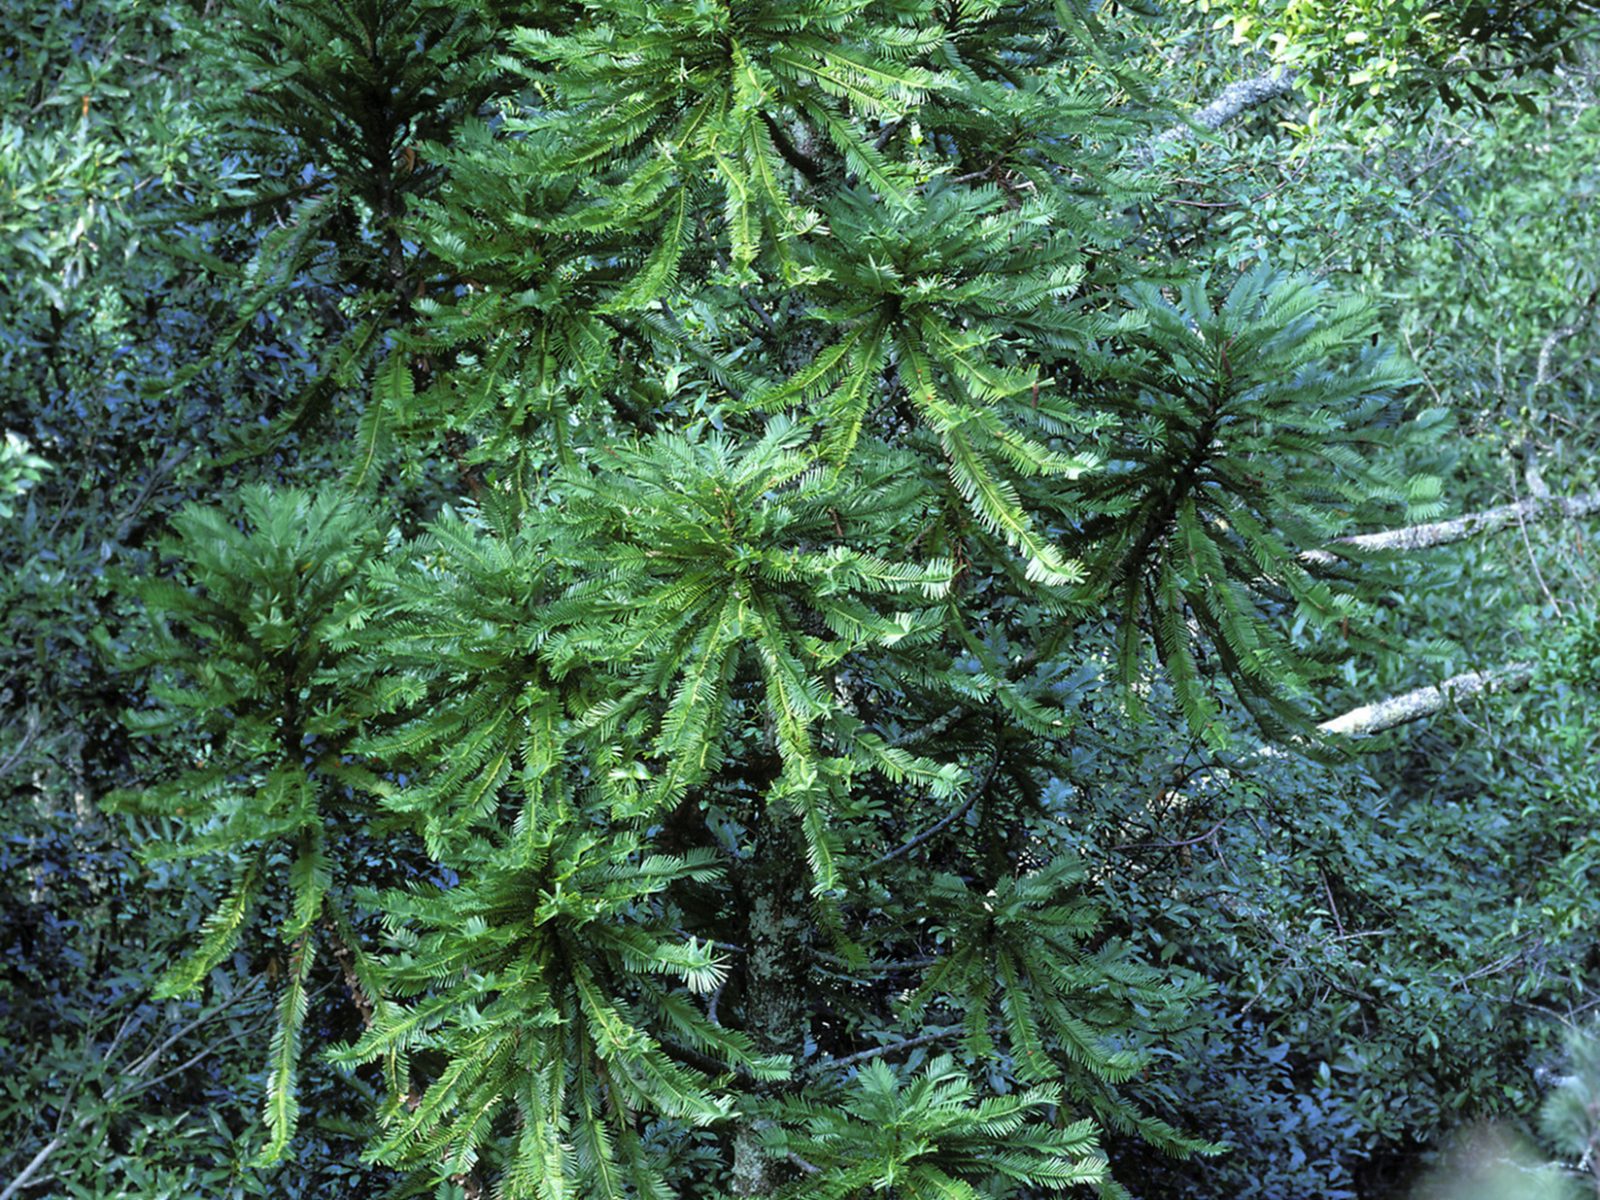 Wollemi Pine, Wollemia nobilis adult trees. Photo credit: Jaime Plaza/Botanic Gardens Trust